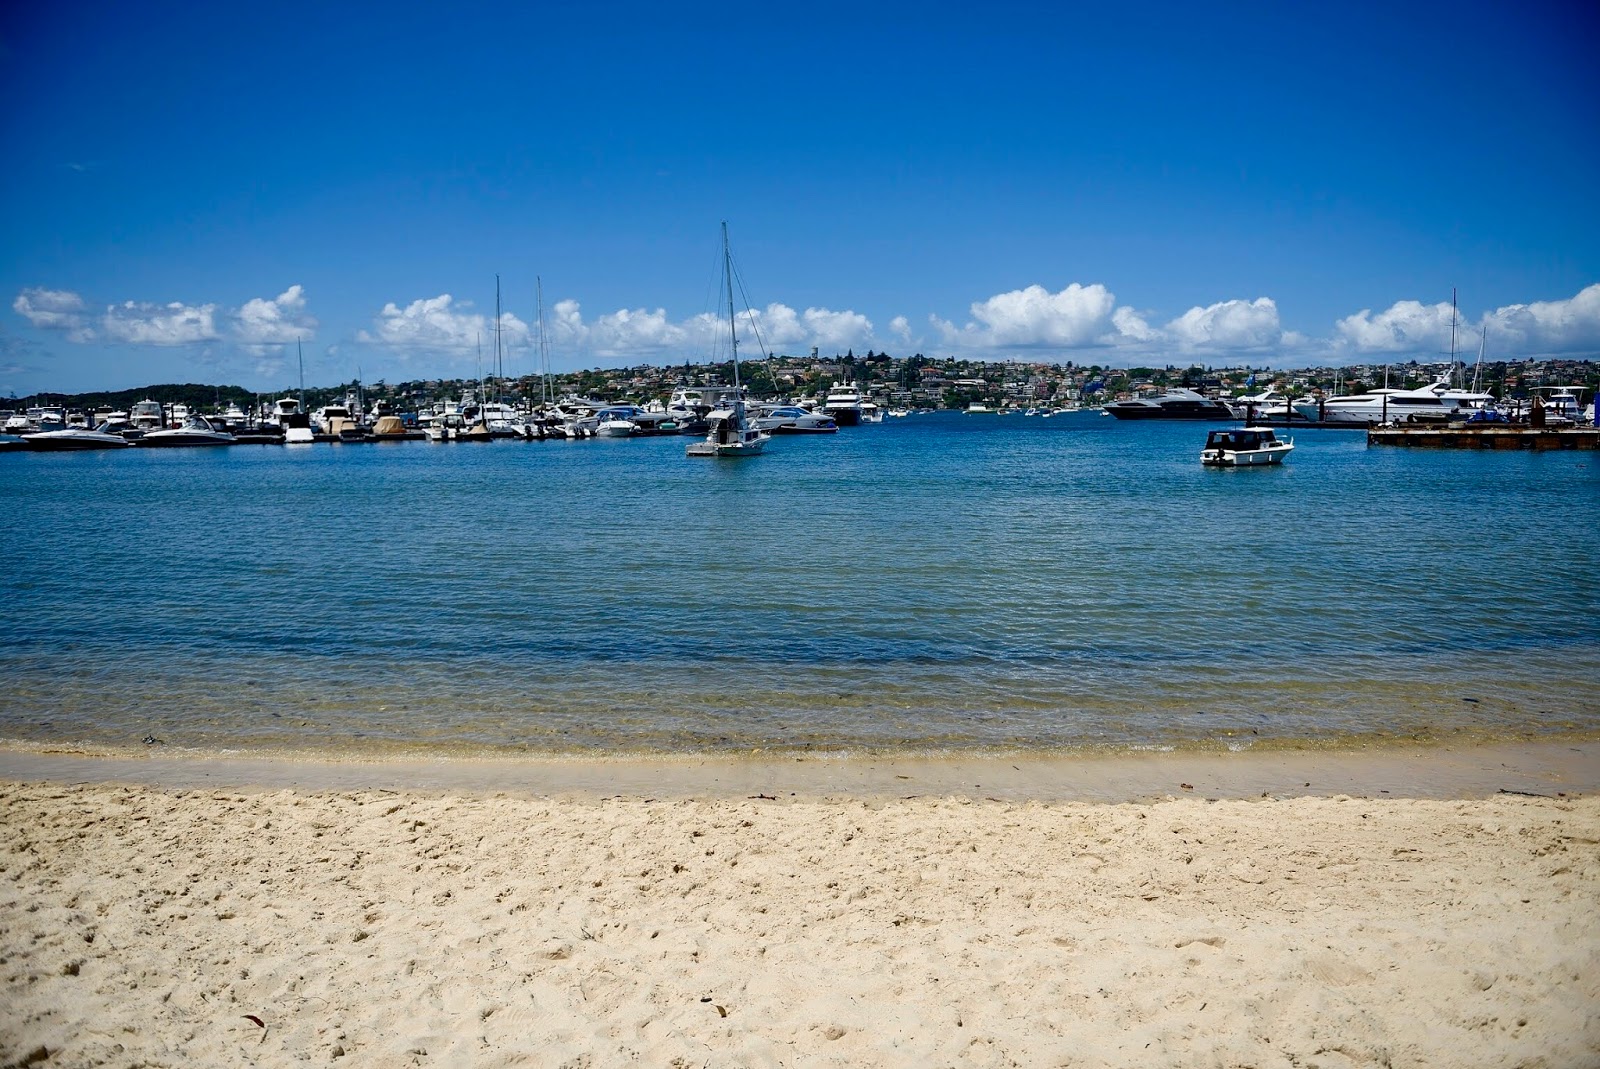 Fotografie cu Bellamy Beach - locul popular printre cunoscătorii de relaxare